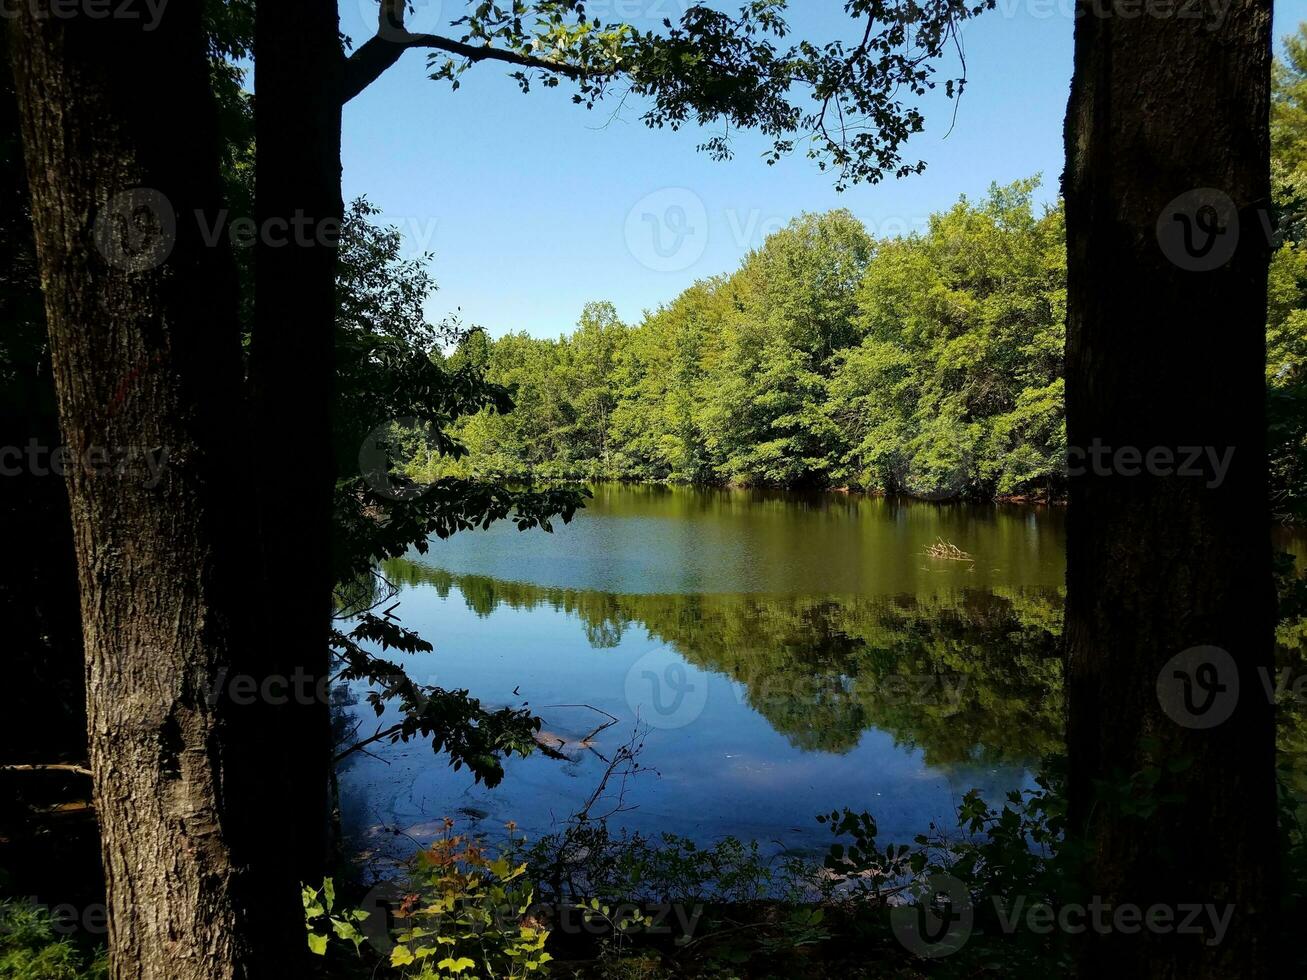 reflexivo lago ou lagoa água com árvores dentro floresta foto